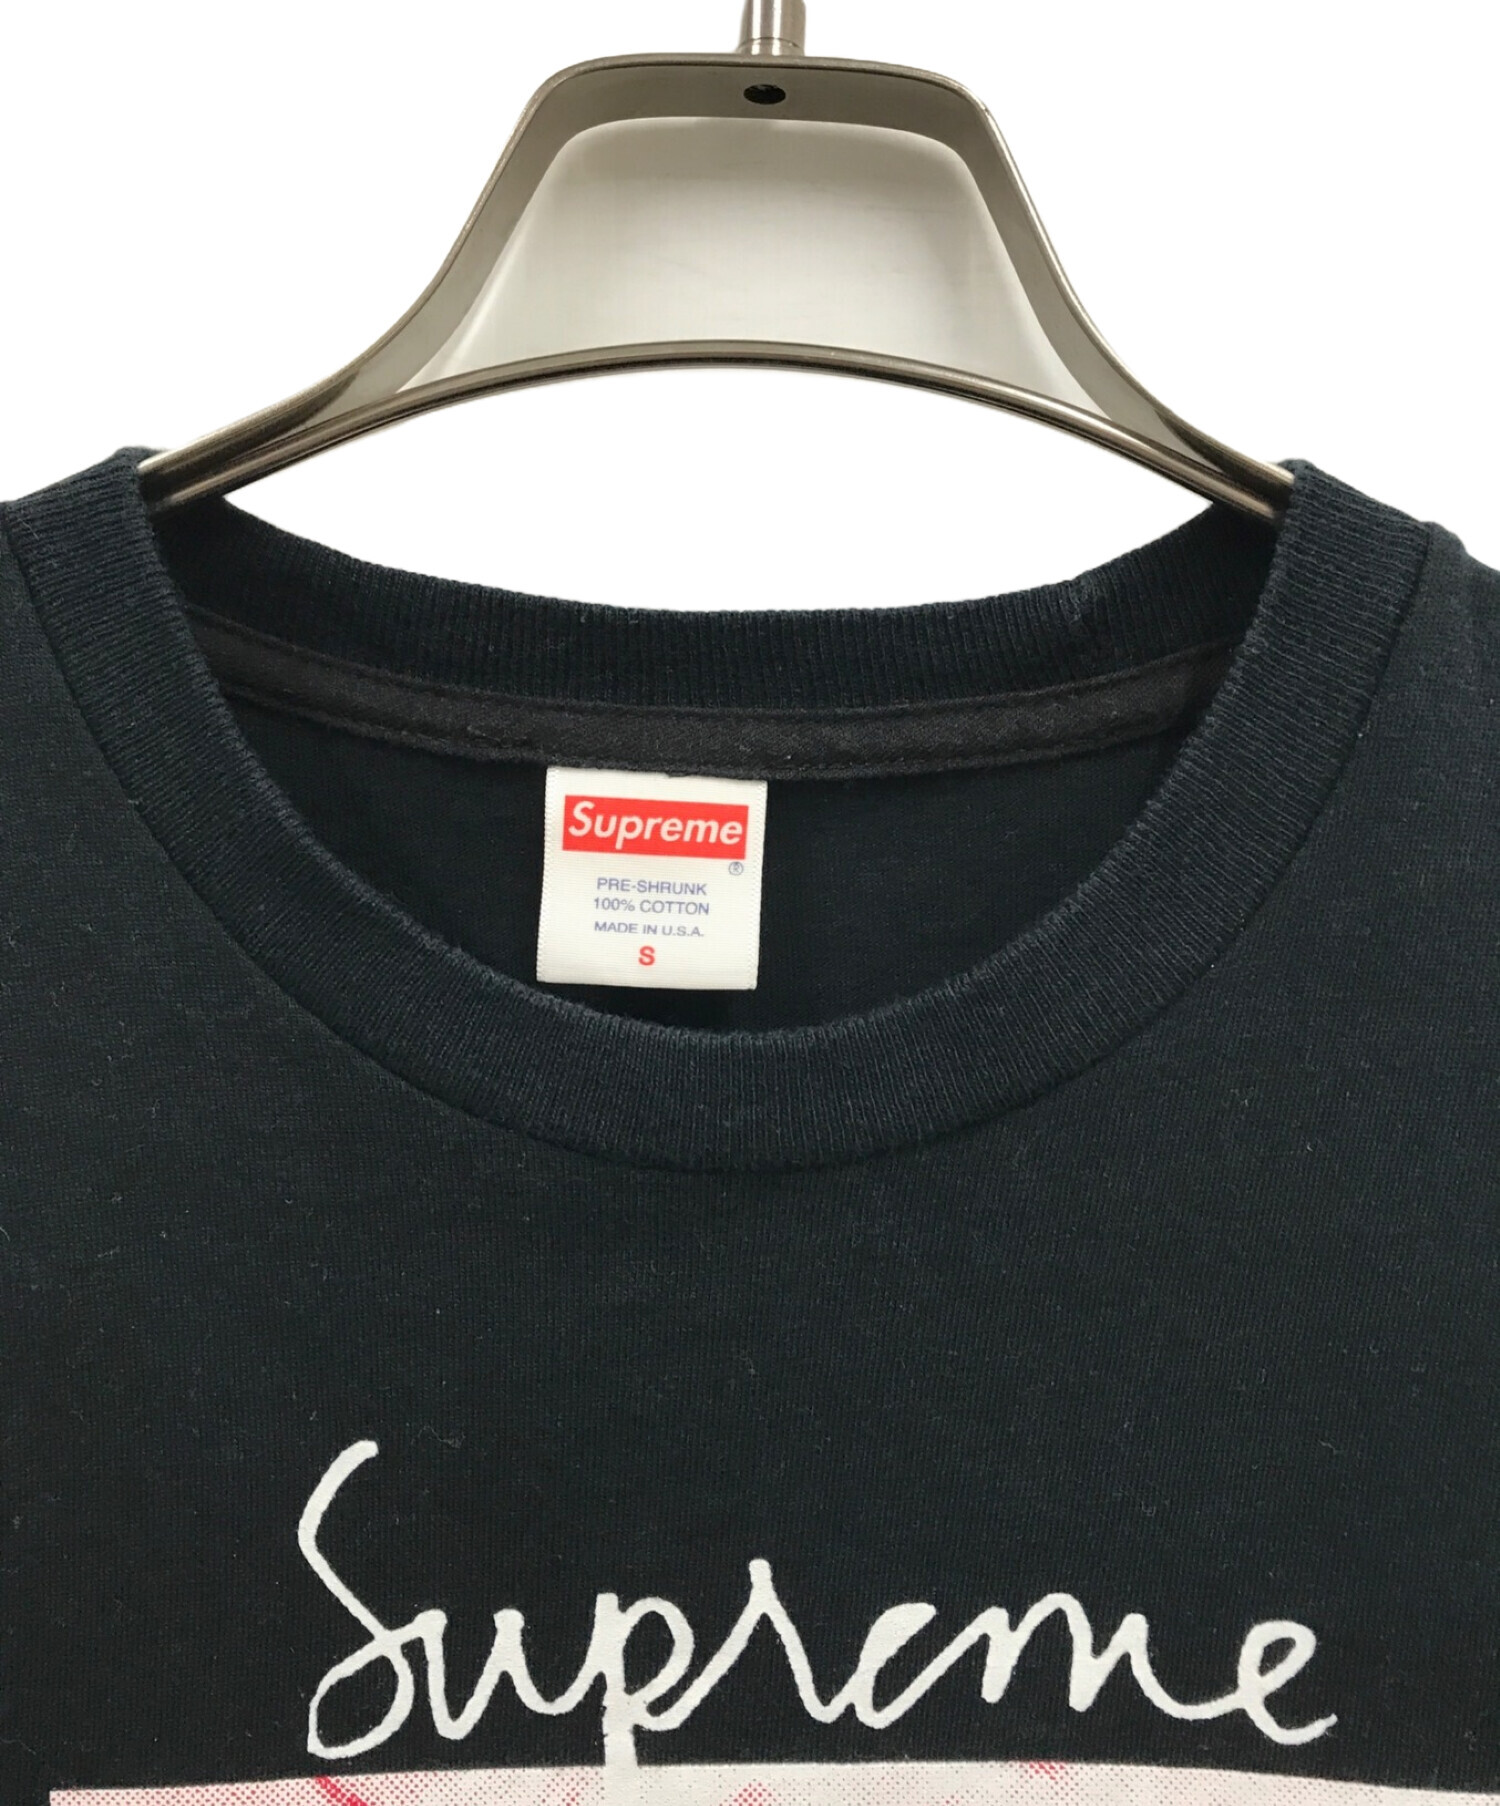 Supreme (シュプリーム) 18AW/Madonna Tee/マドンナTシャツ/Tシャツ ブラック サイズ:S